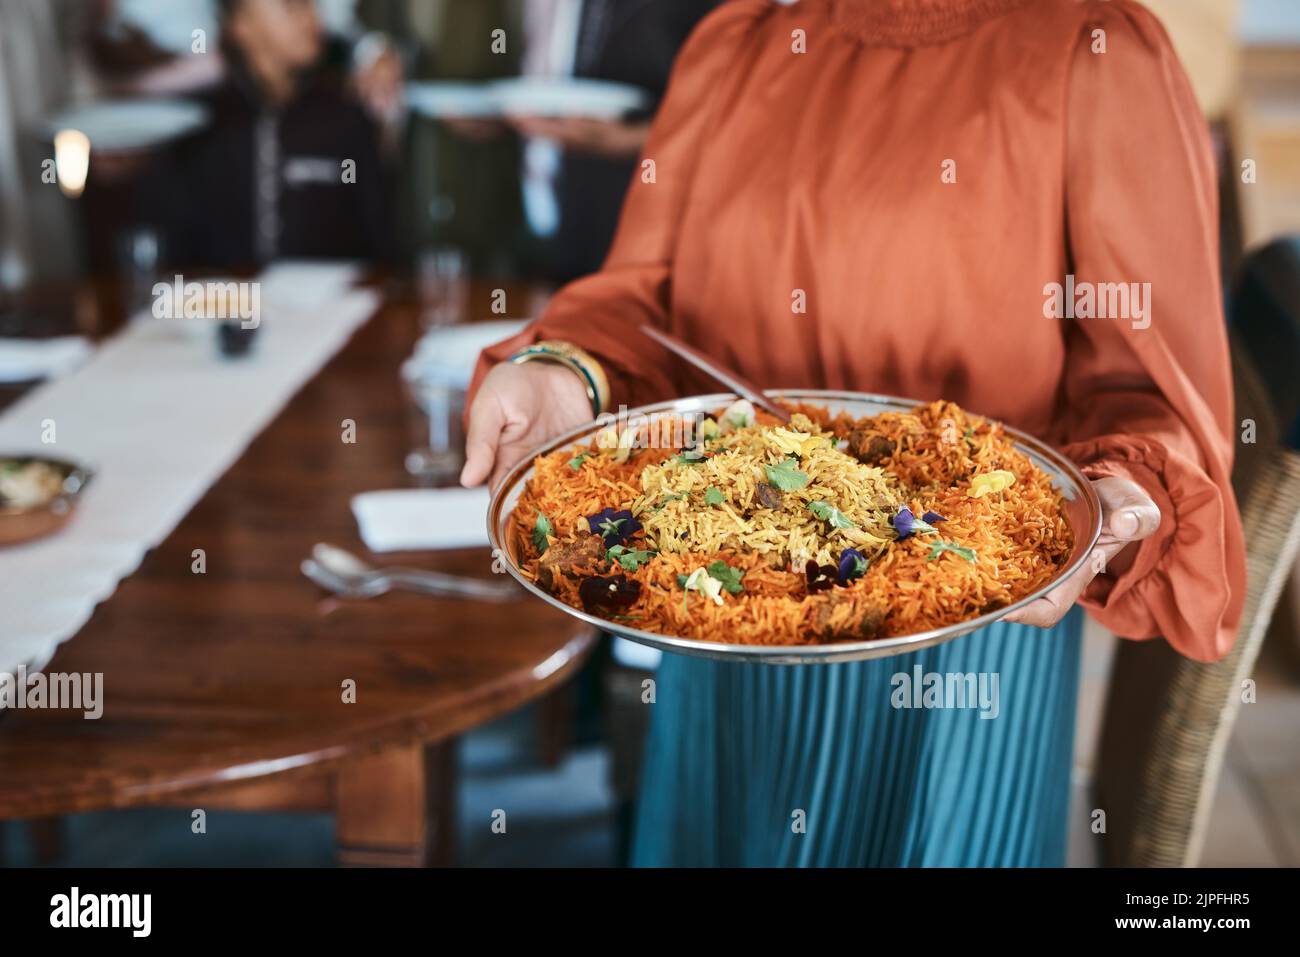 Essen, Abendessen und Verbrauchsmaterialien mit einem traditionellen Paella-Gericht in den Händen einer Frau zu Hause. Nahaufnahme einer Schüssel mit spanischer Meeresnahrung, fertig zum Servieren und Stockfoto